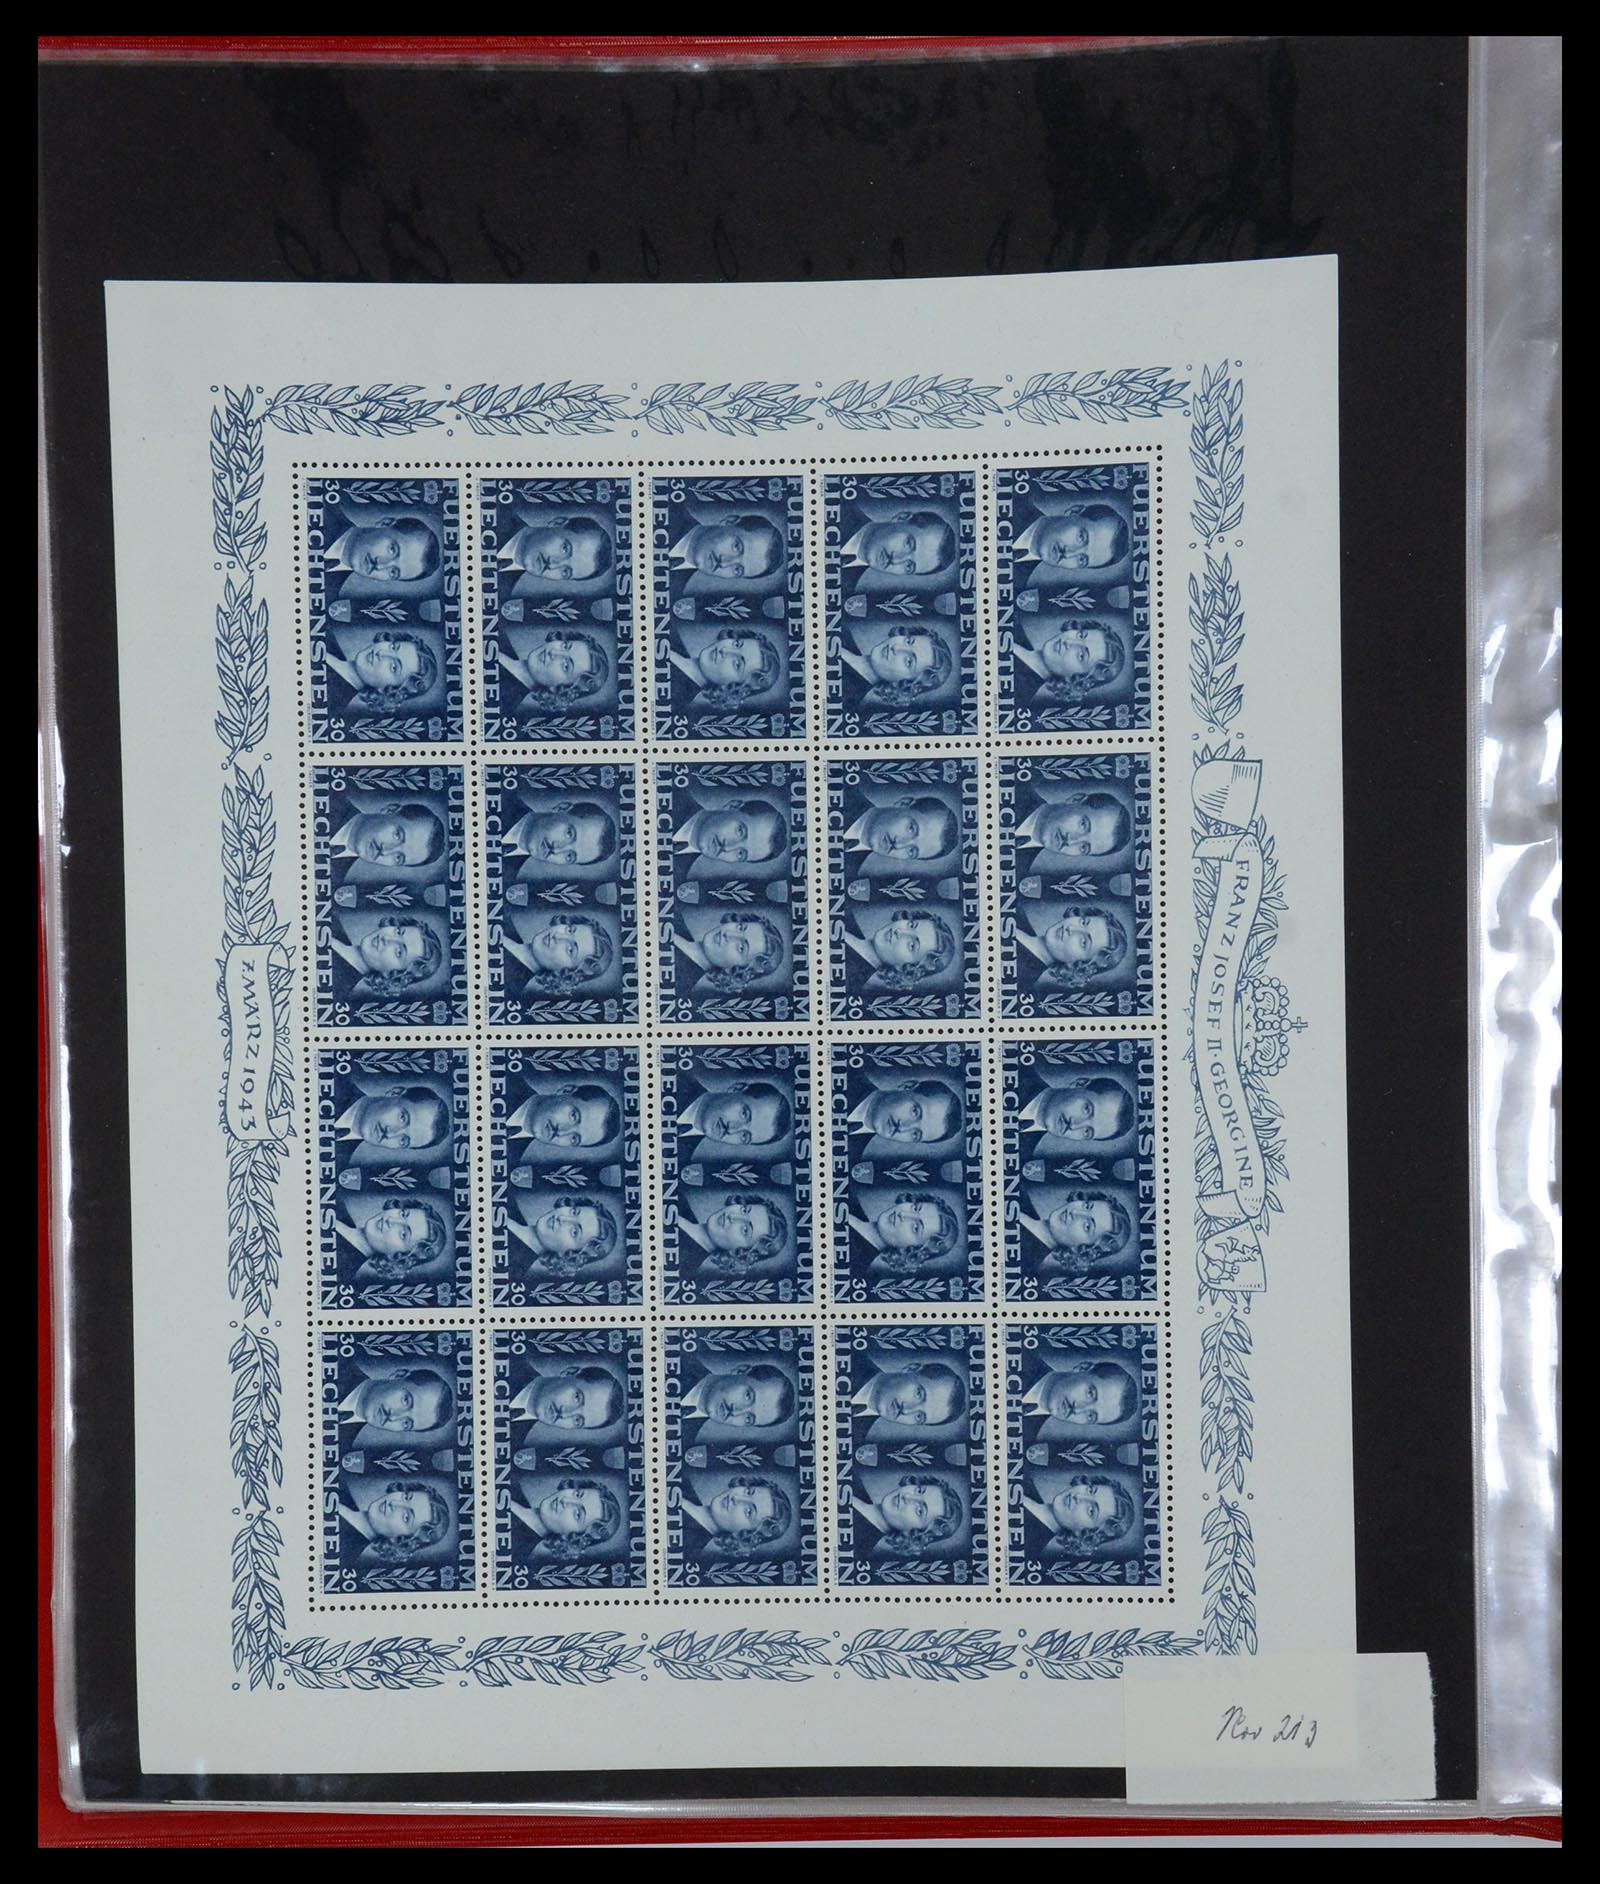 36280 030 - Stamp collection 36280 Liechtenstein souvenir sheets and sheetlets 1934-